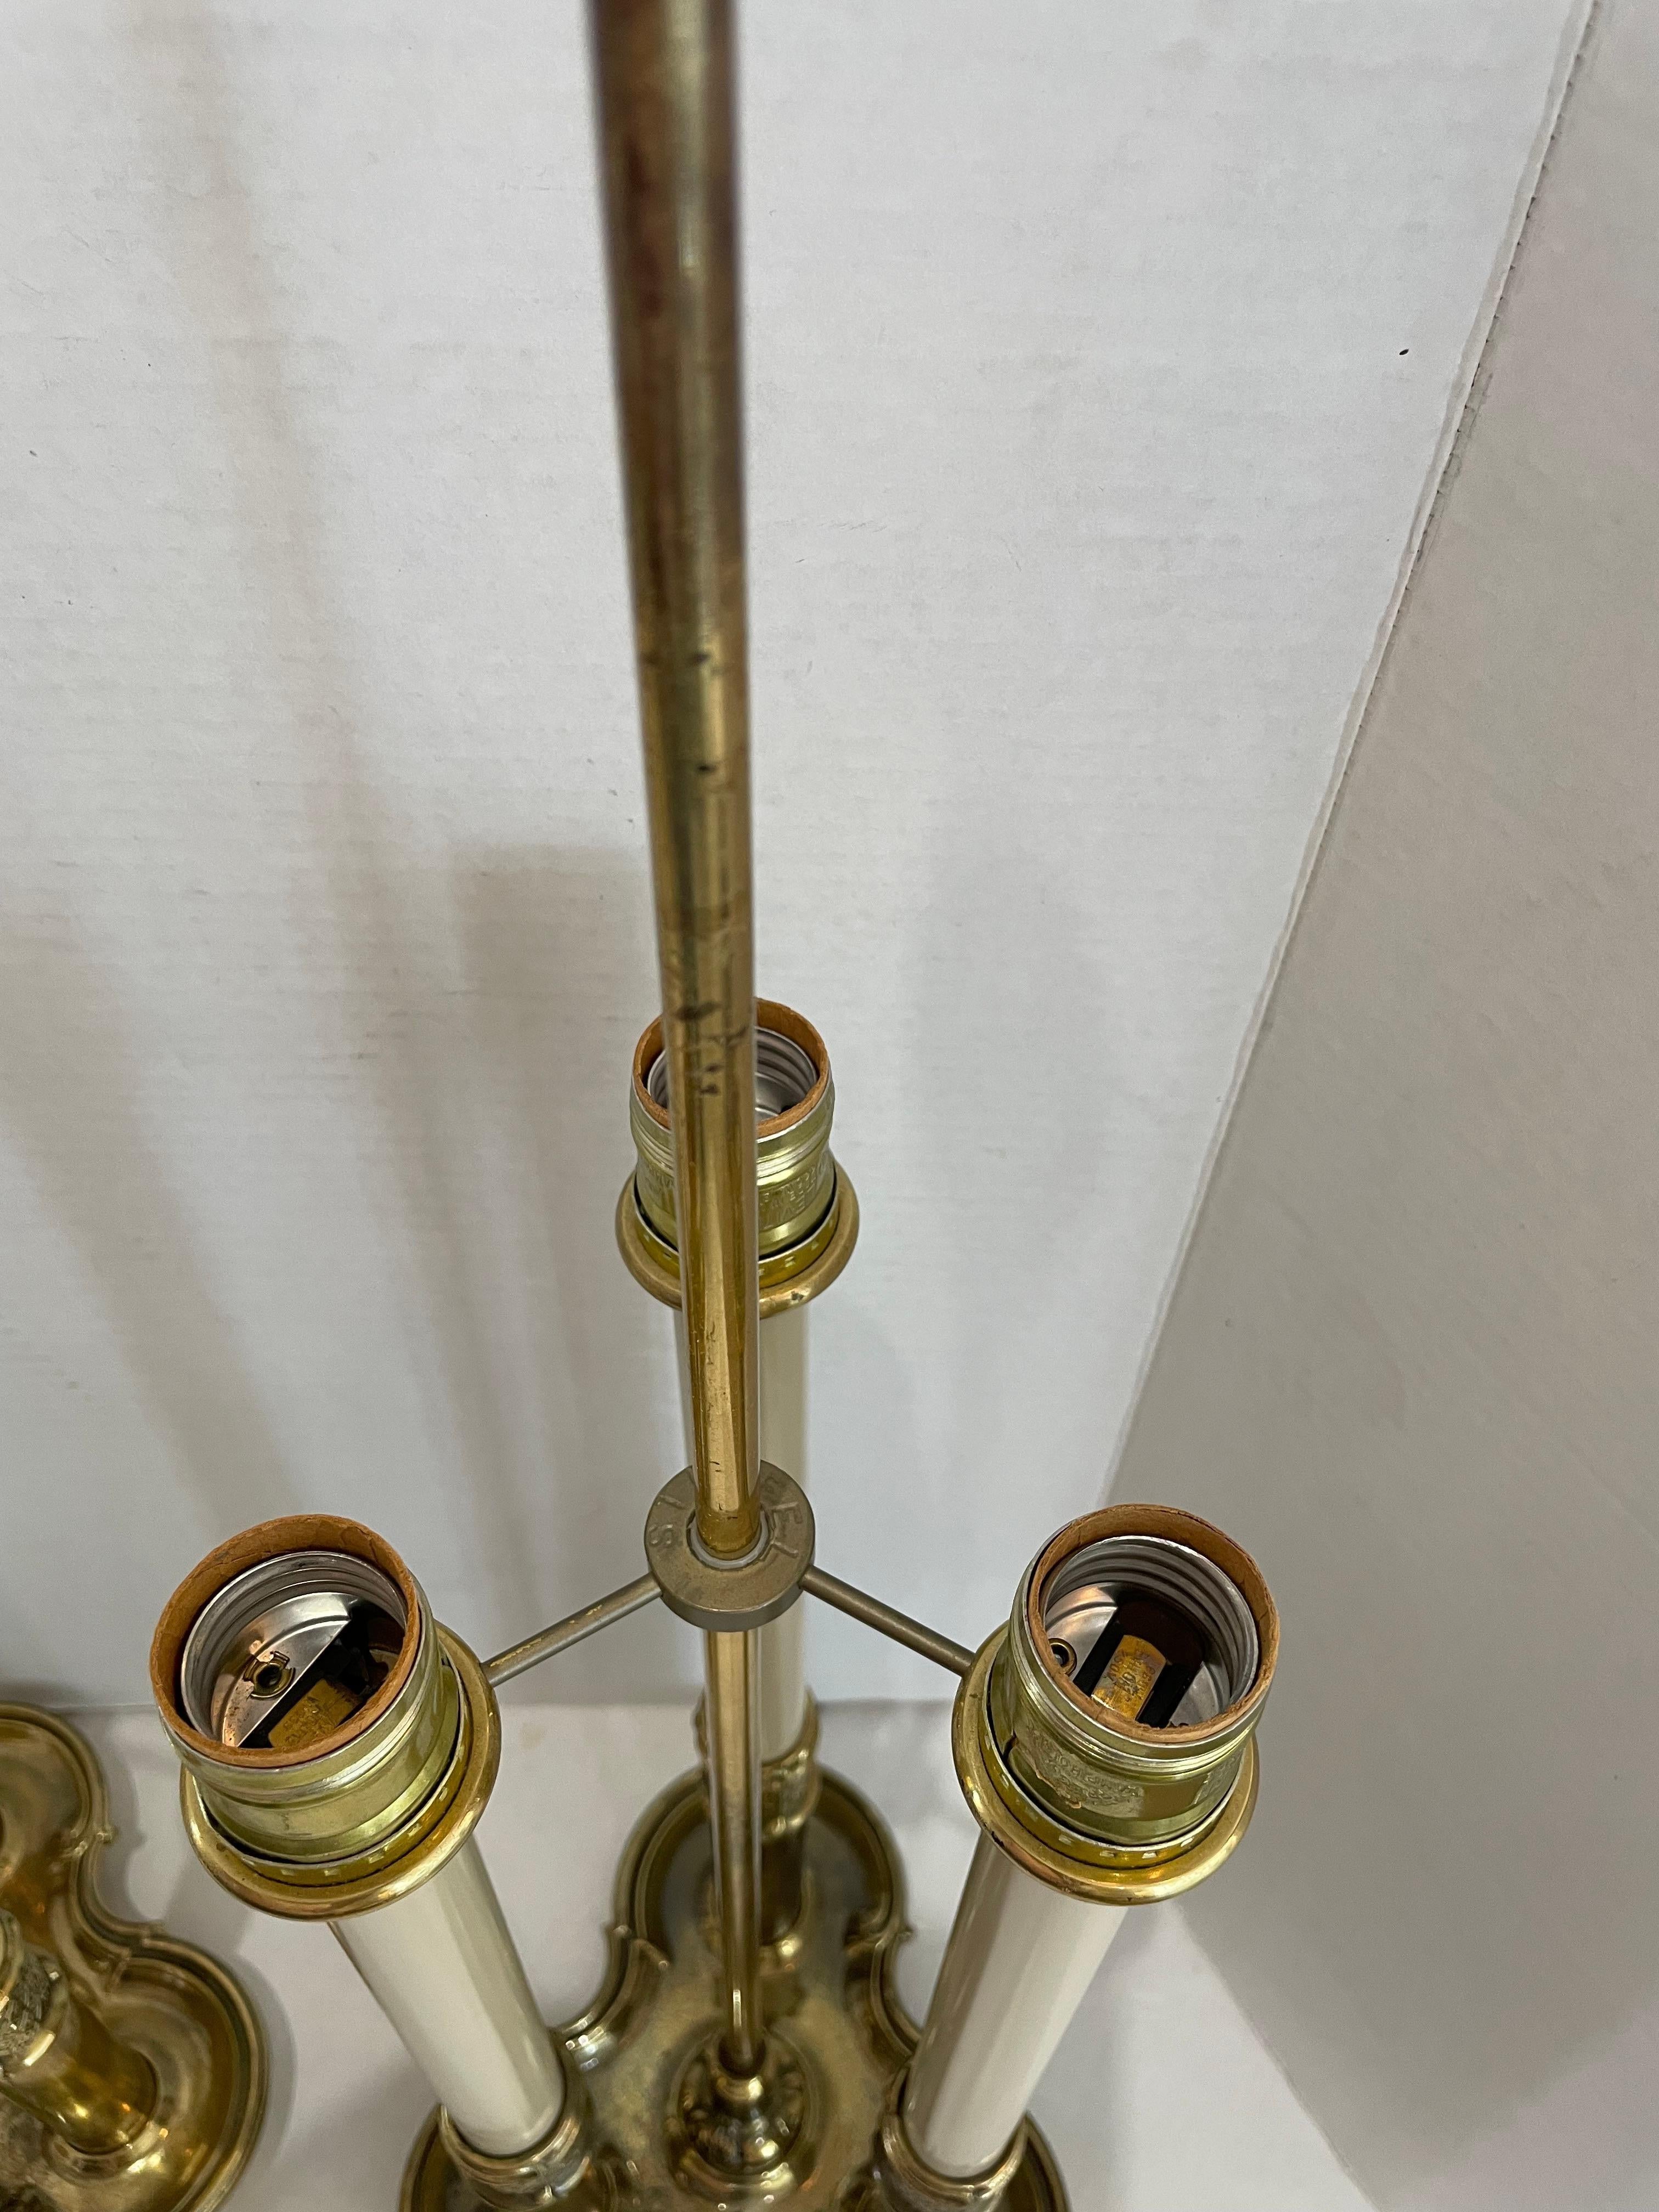 Cette paire de lampes de table Stiffel, élégante et chic, est très proche des lampes bouillottes françaises de la fin du XVIIIe siècle. 

Remarque : nécessite trois ampoules à culot Edison. 